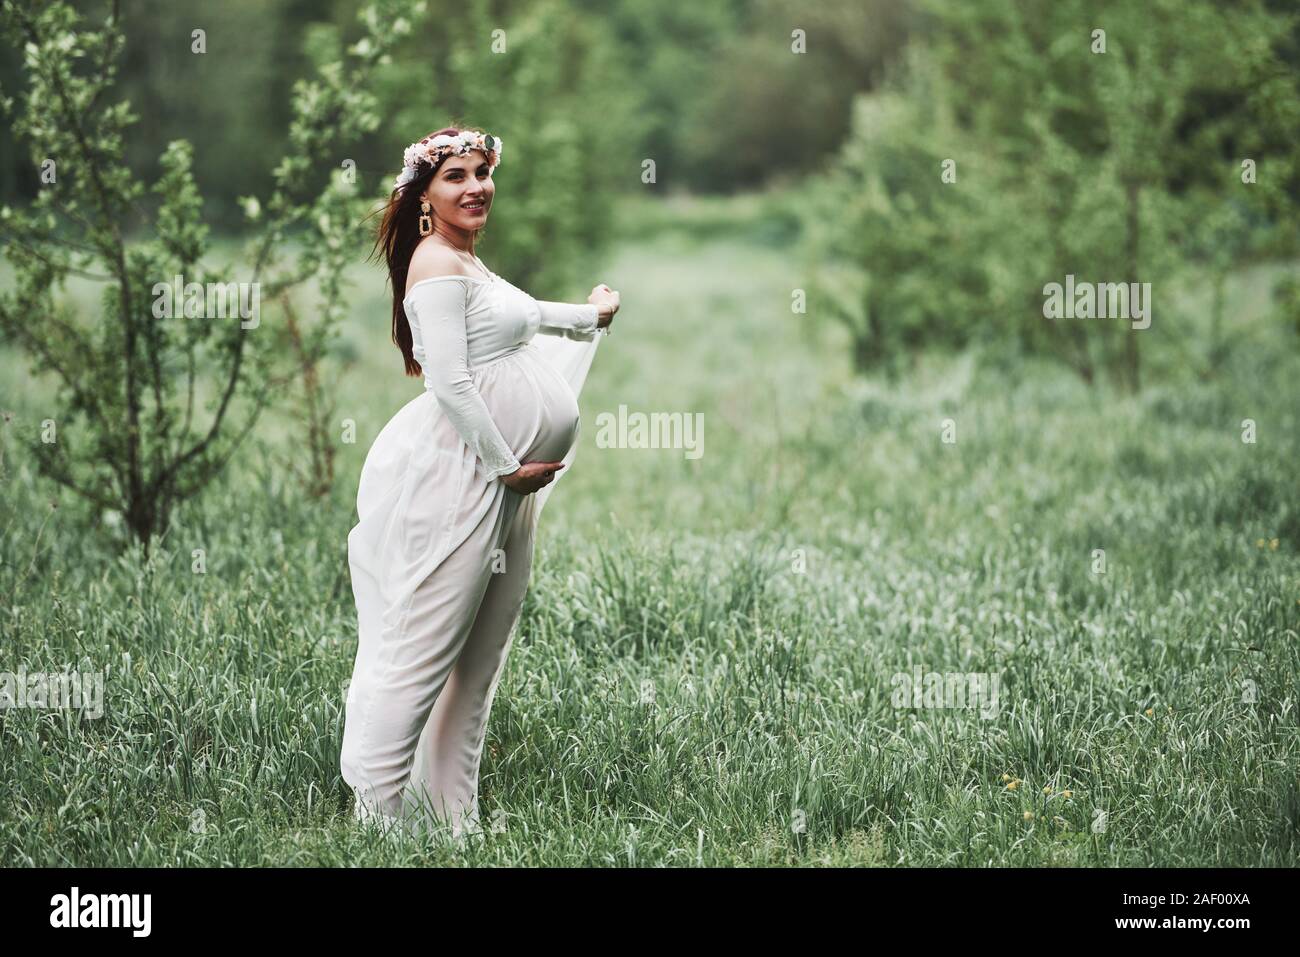 Corona de flores en la cabeza. Hermosa mujer embarazada en vestido tienen una caminata al aire libre. Morena positivo Fotografía de stock -